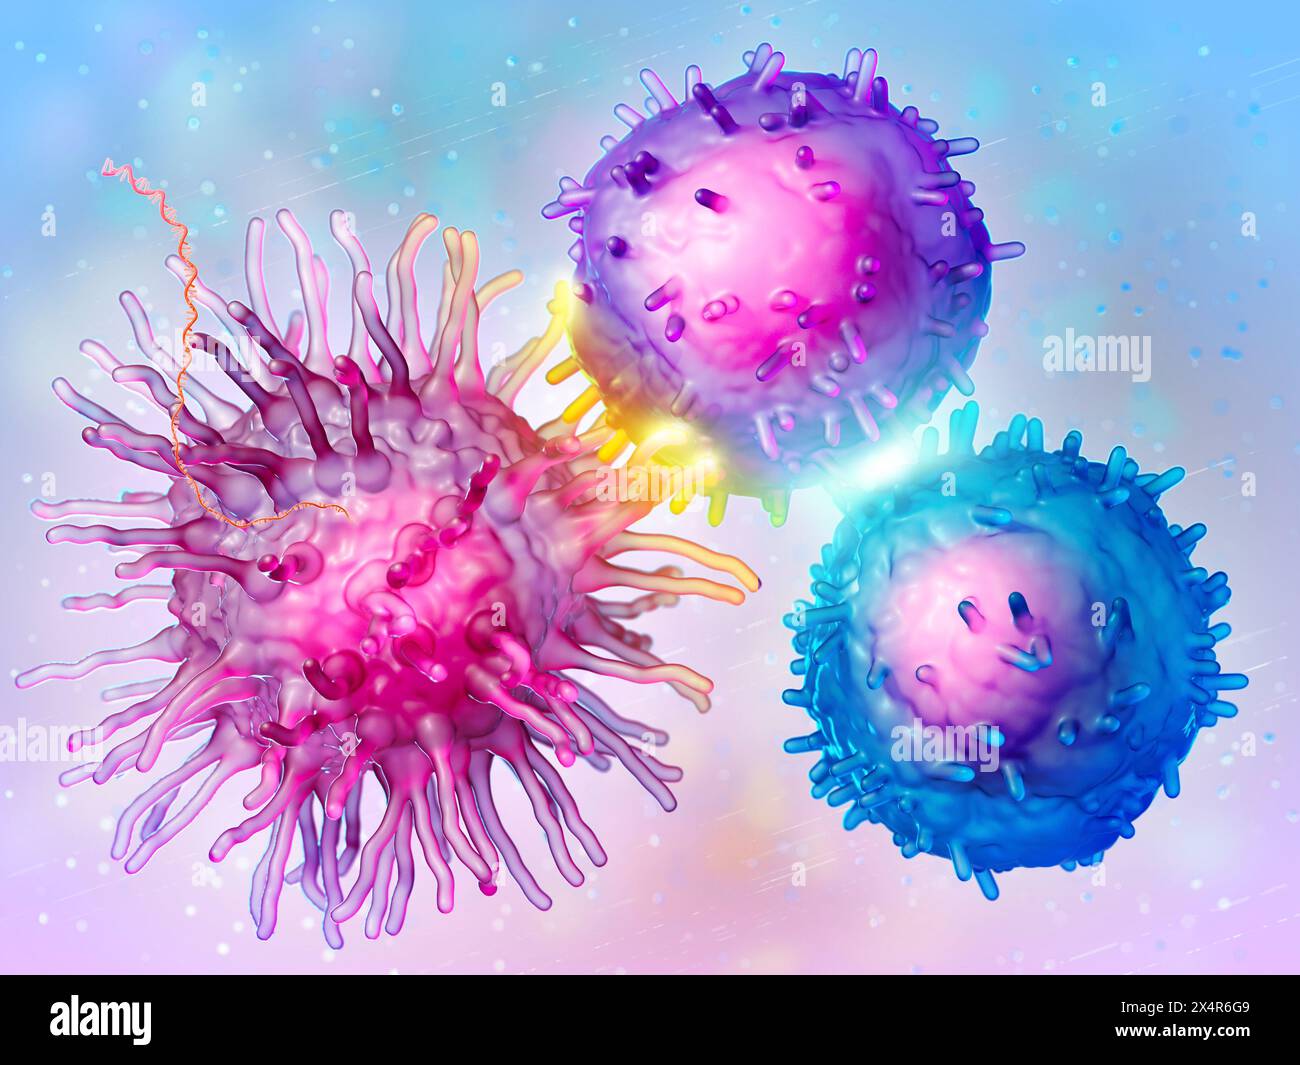 Illustration d'un vaccin ARNm (acide ribonucléique messager) entrant dans une cellule présentatrice d'antigène (cellule dendritique en rose), qui conduit à l'expressi Banque D'Images